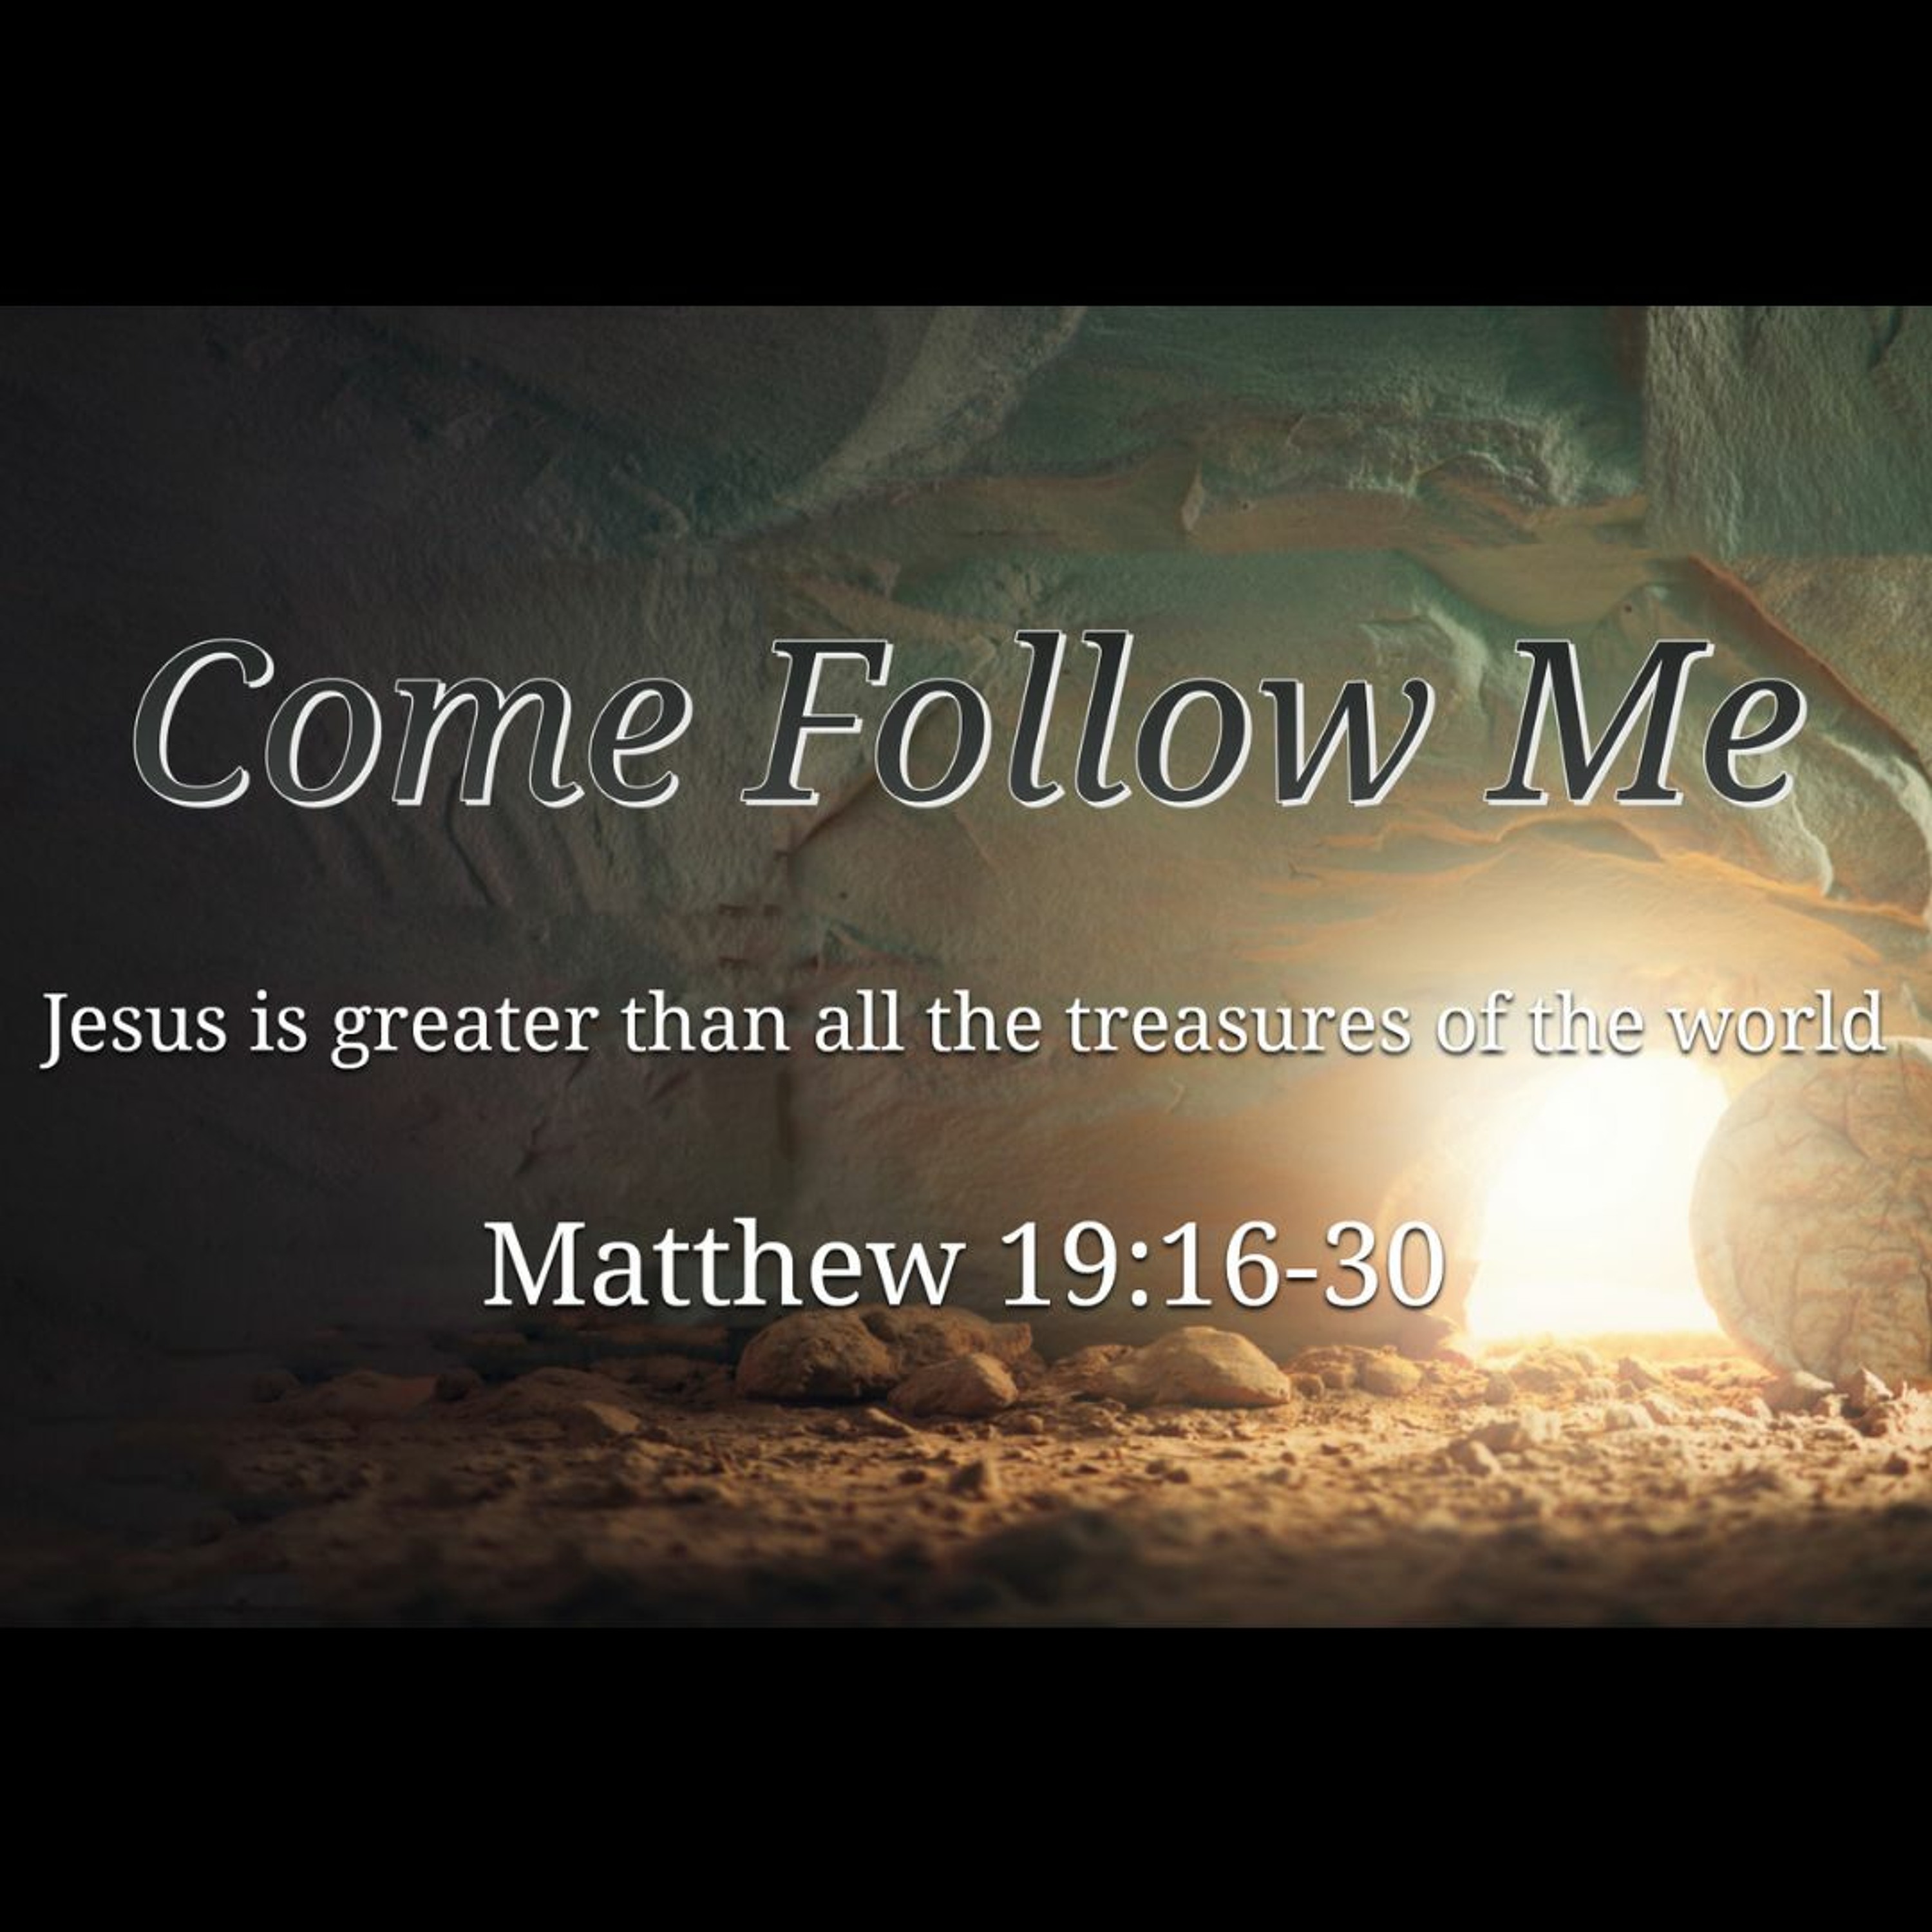 Come Follow Me (Matthew 19:16-30)